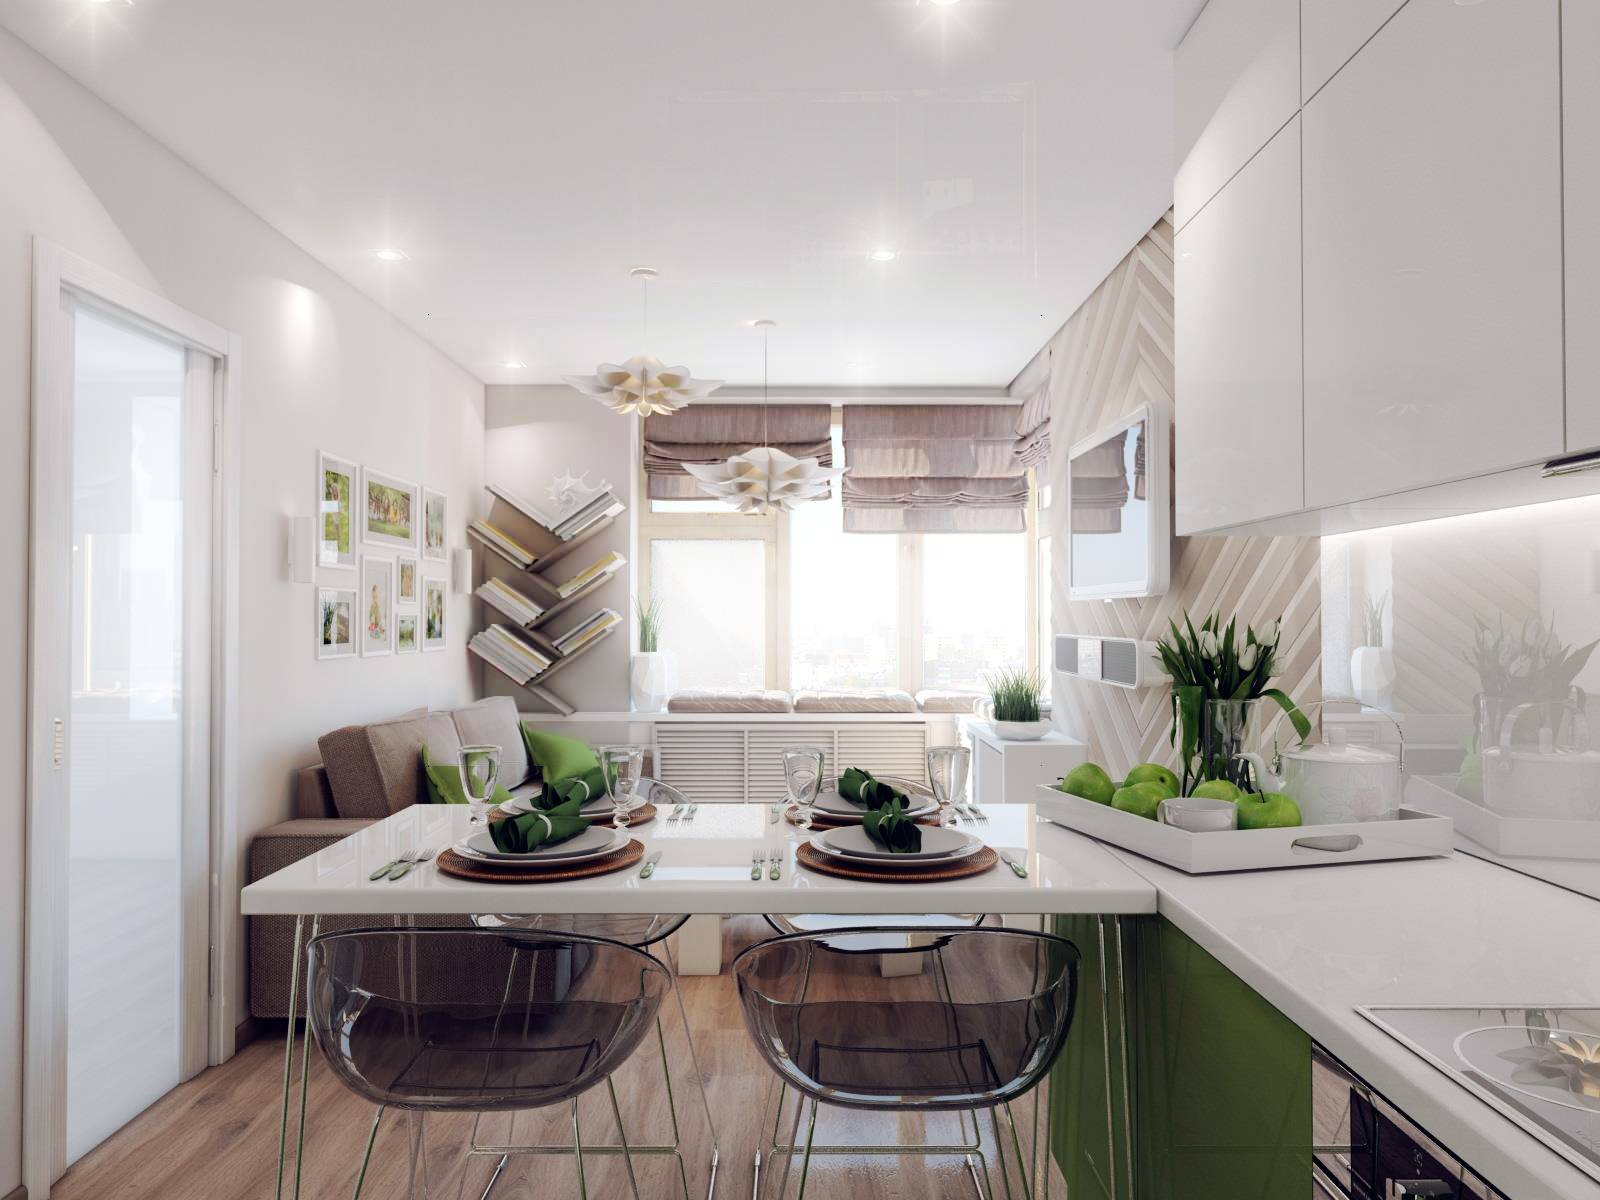 Дизайн кухни-гостиной 18 кв. м (60 фото): проект и планировка интерьера квадратного помещения с диваном размером 18 квадратных метров